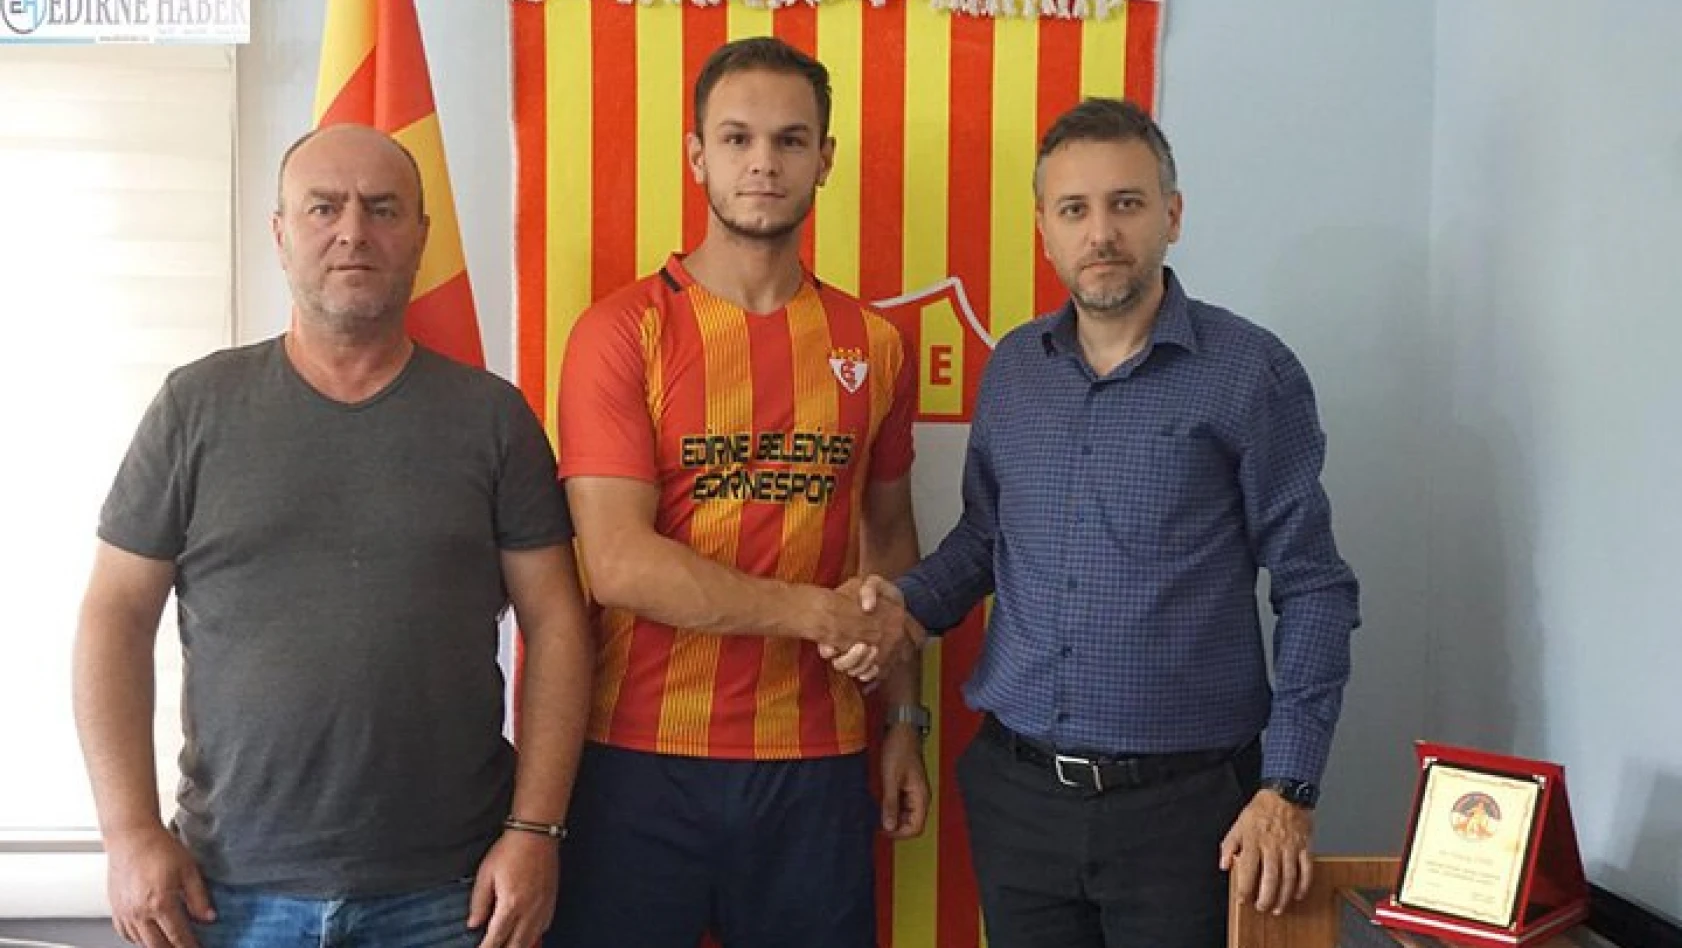 Â Edirnespor'da yeni sezon transferleri sürüyor.